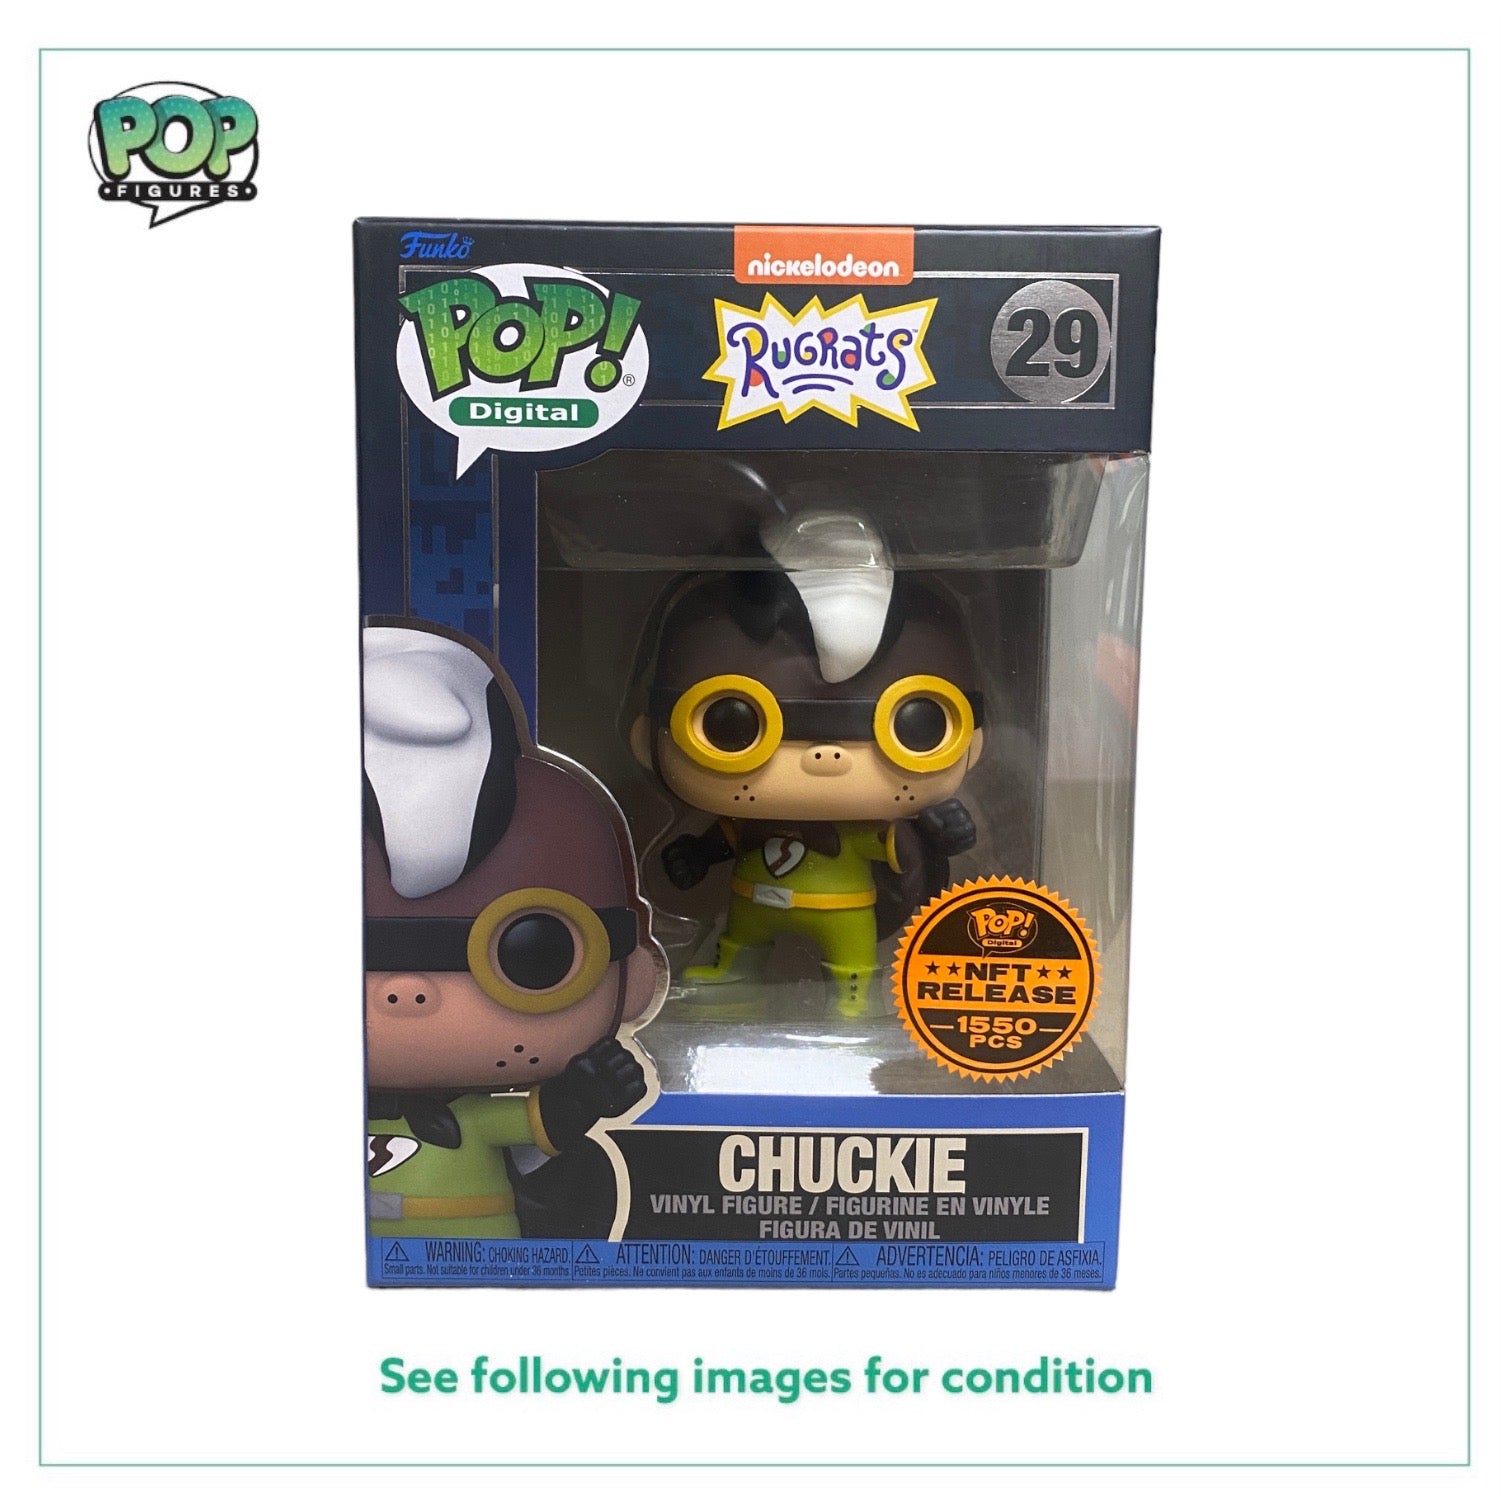 Chuckie #29 Funko Pop! - Rugrats - NFT Release Exclusive LE1550 Pcs - Condition 8.5/10